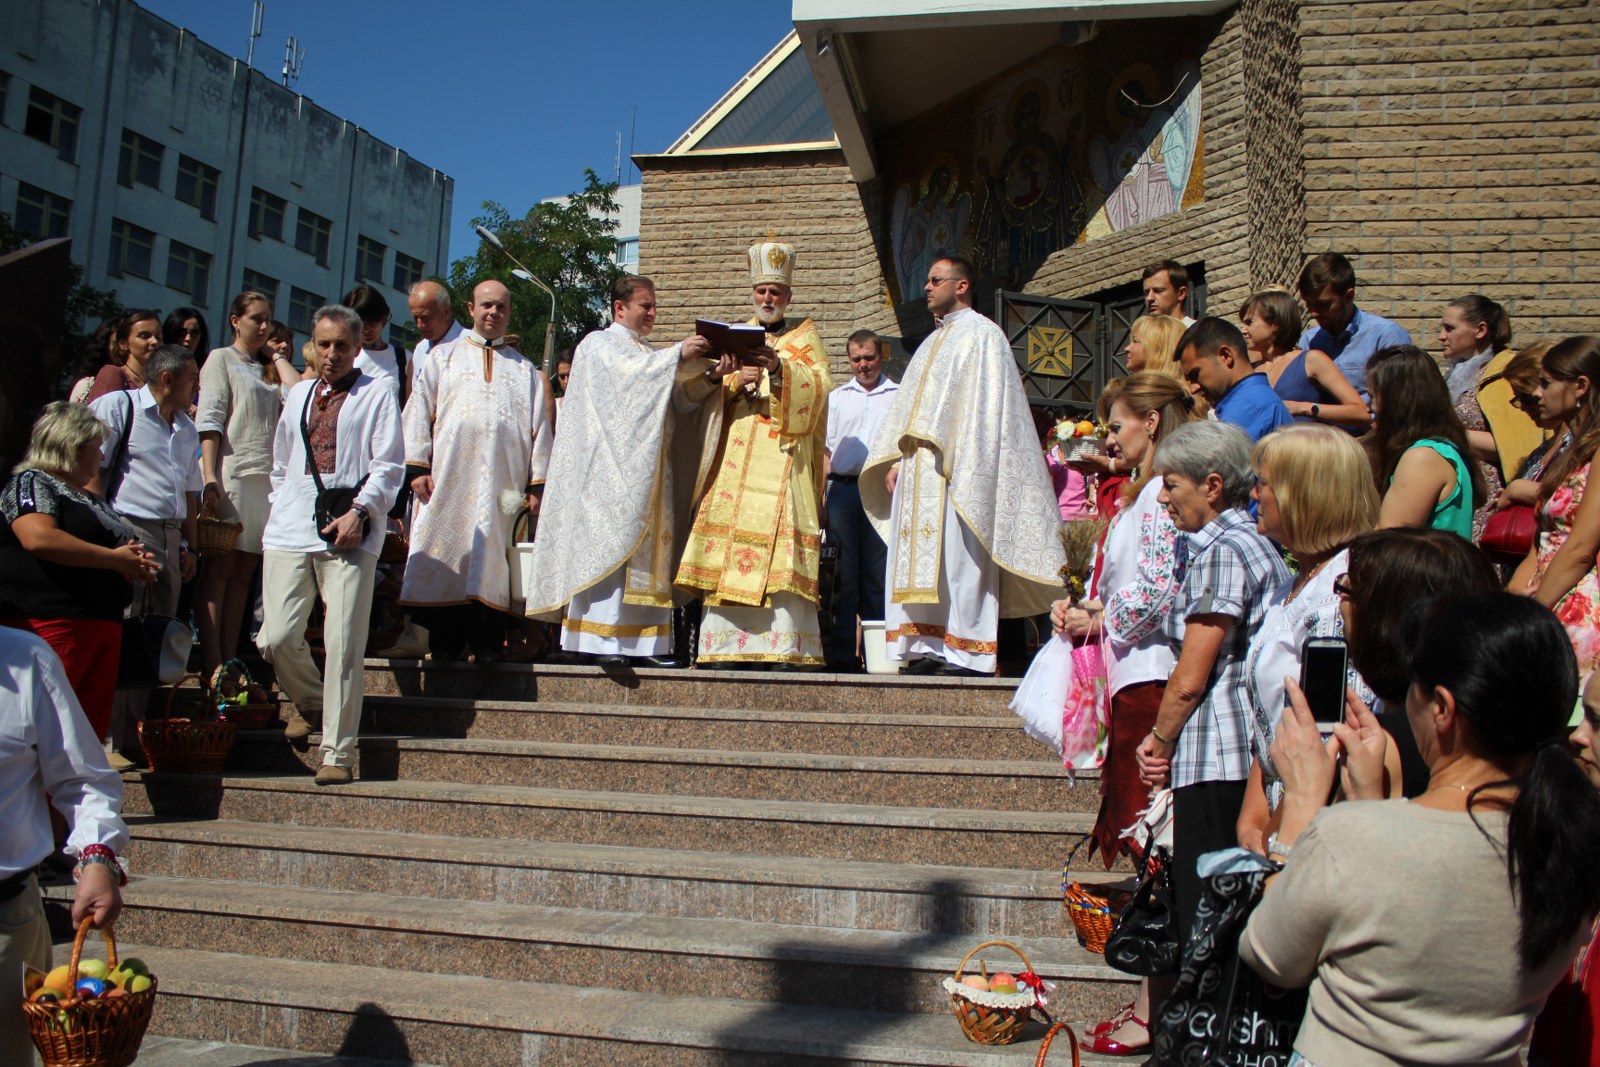 2014-08-19 – Kyiv – Pered chramom UHKC (5)_1600x1067